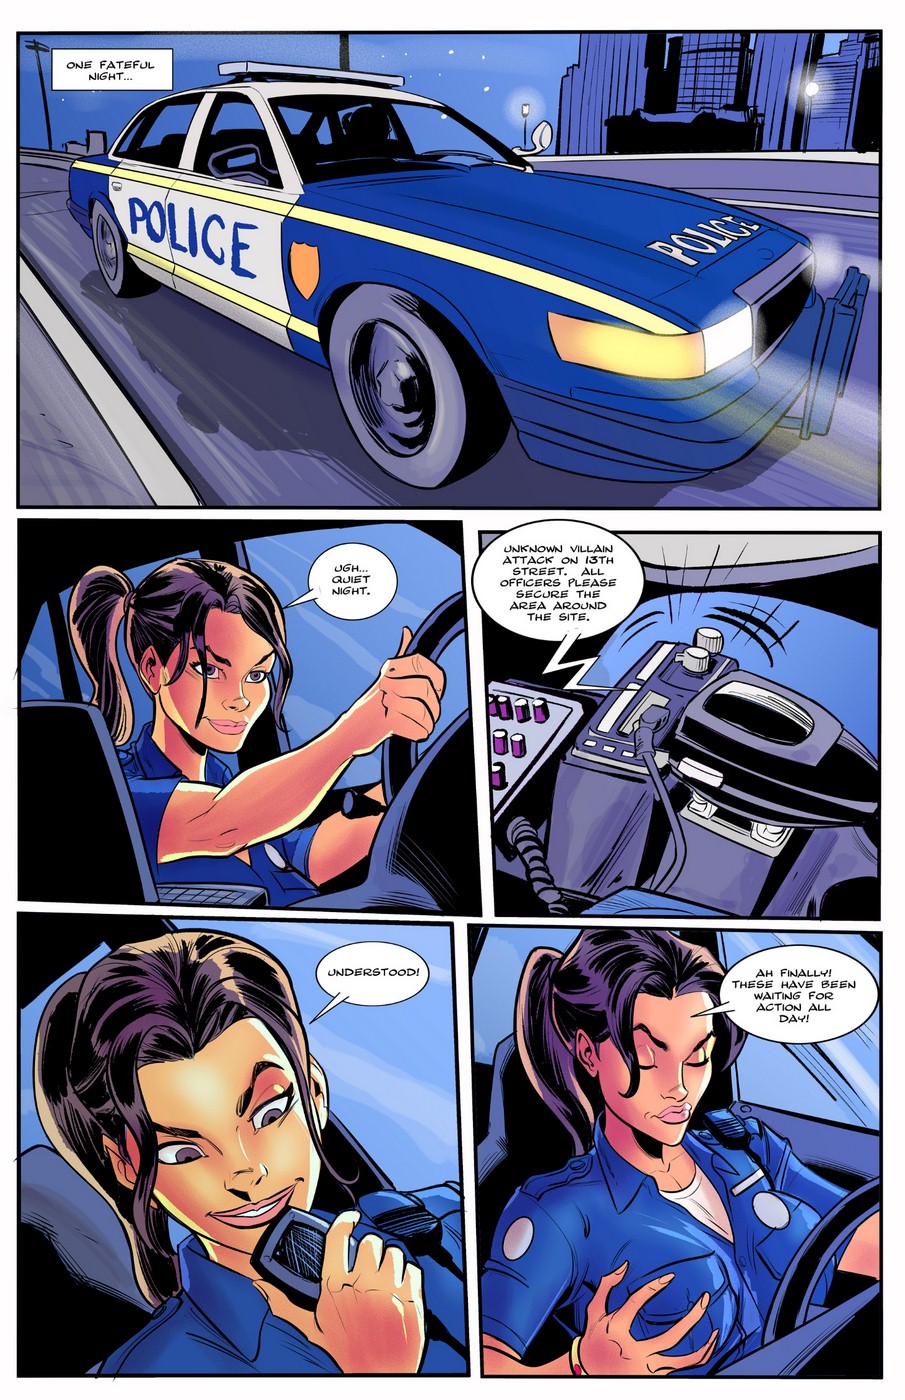 Police Officer Boob Comic - Bot Comics - Super BEro vs. Boobpire 1 | Porn Comics